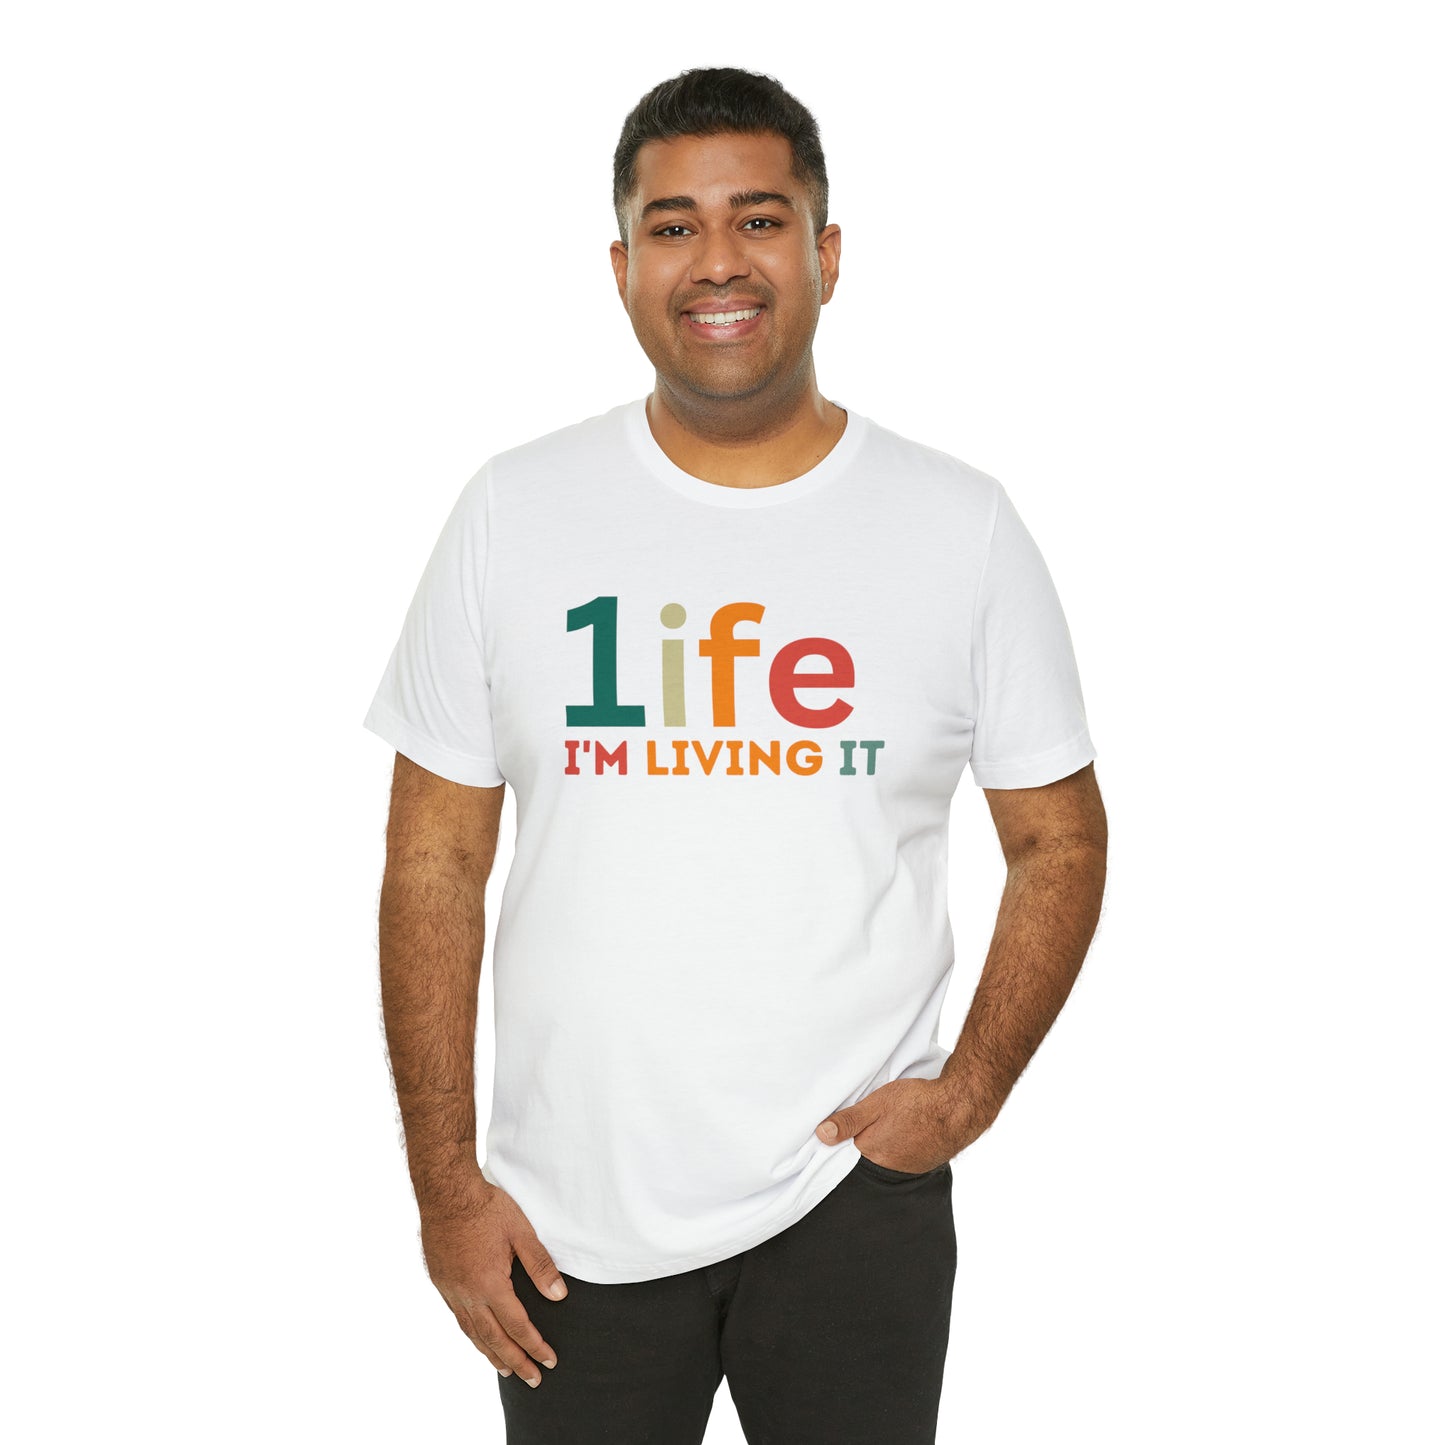 One life Shirt Retro 1life shirt Live Your Life You Only Have One Life To Live Retro Shirt